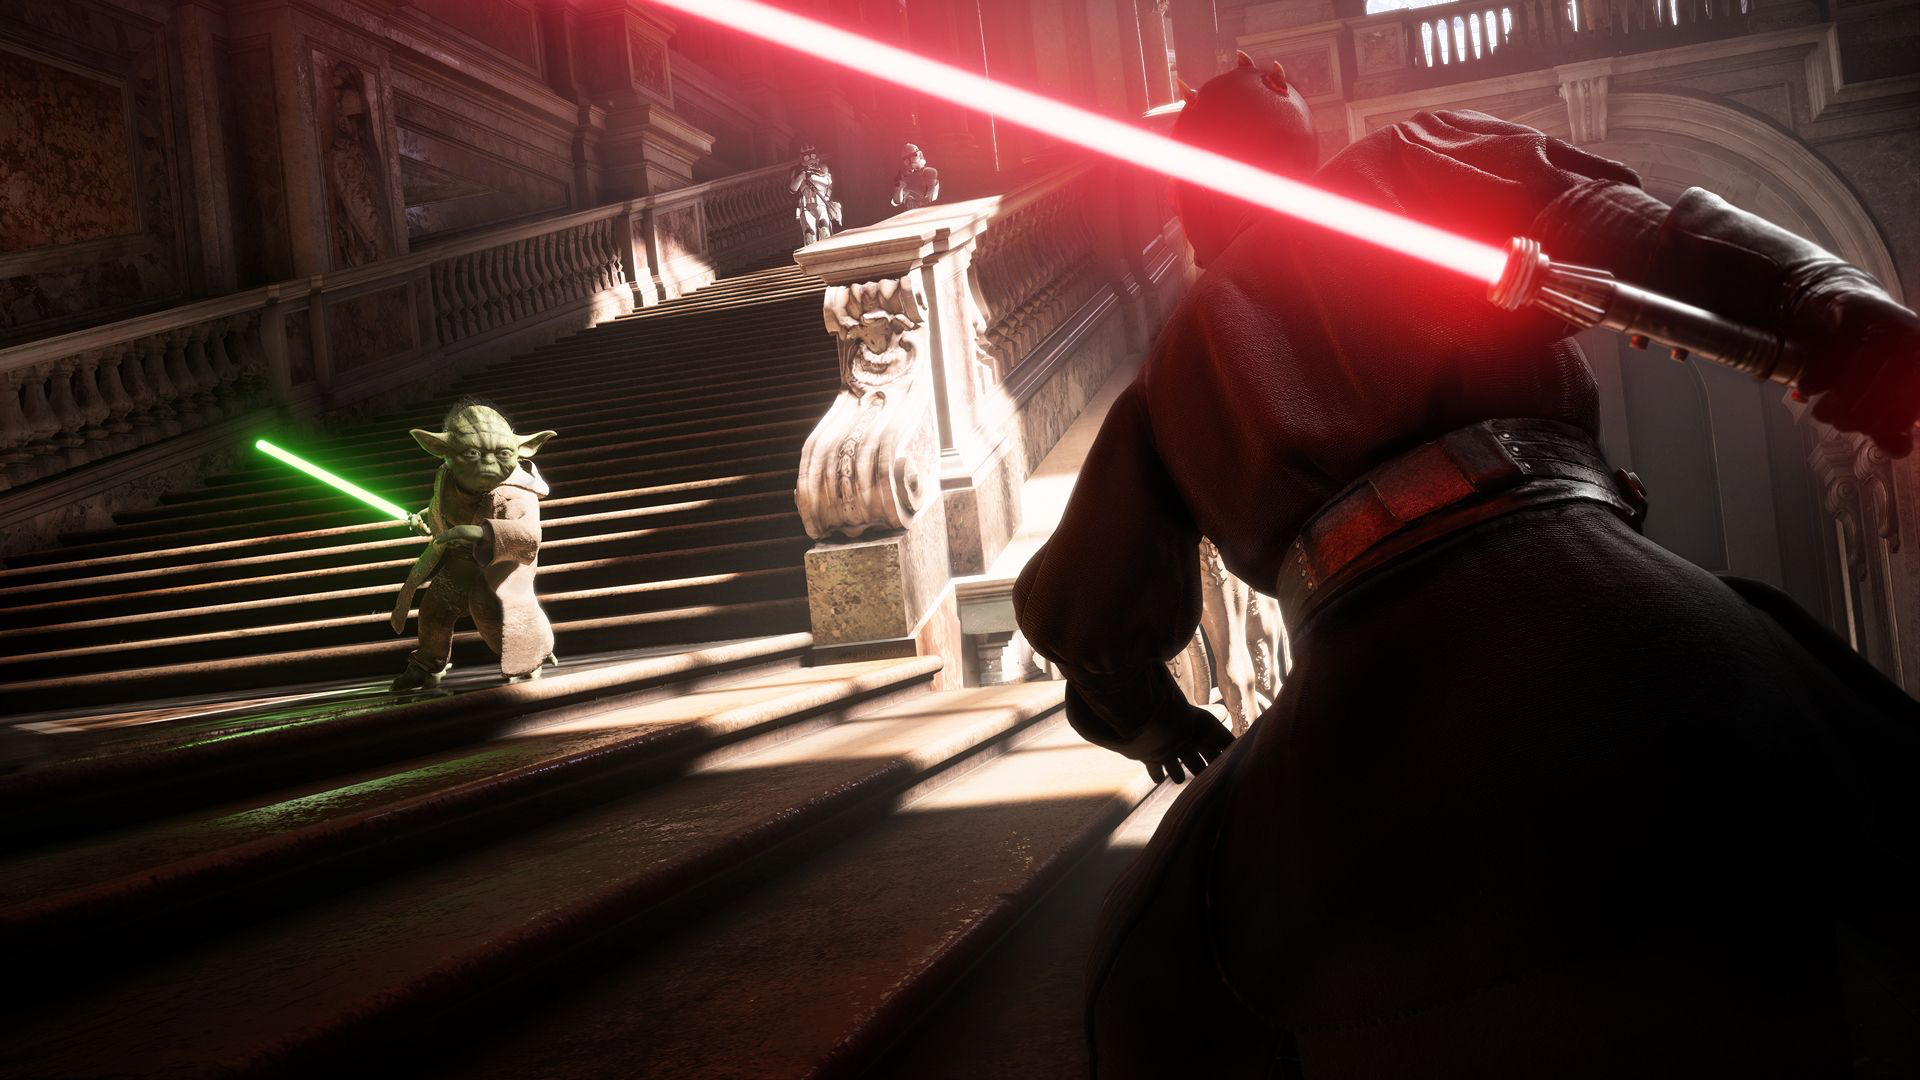 October's Star Wars Battlefront II beta details emerge